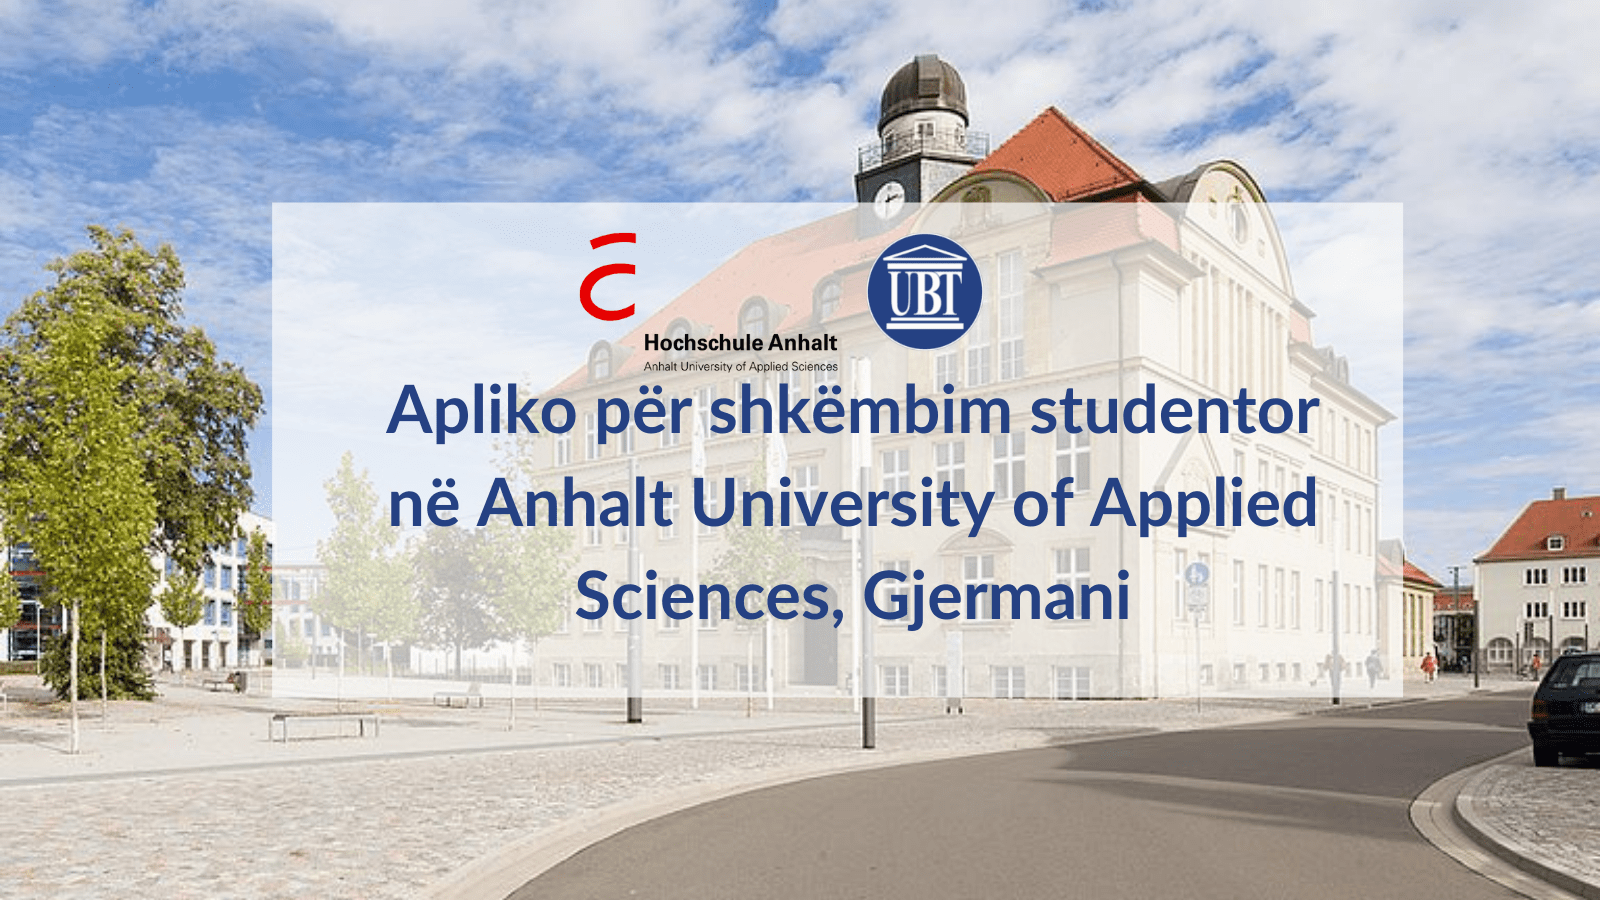 UBT shpall të hapur thirrjen për shkëmbim studentor në Anhalt University of Applied Sciences në Gjermani